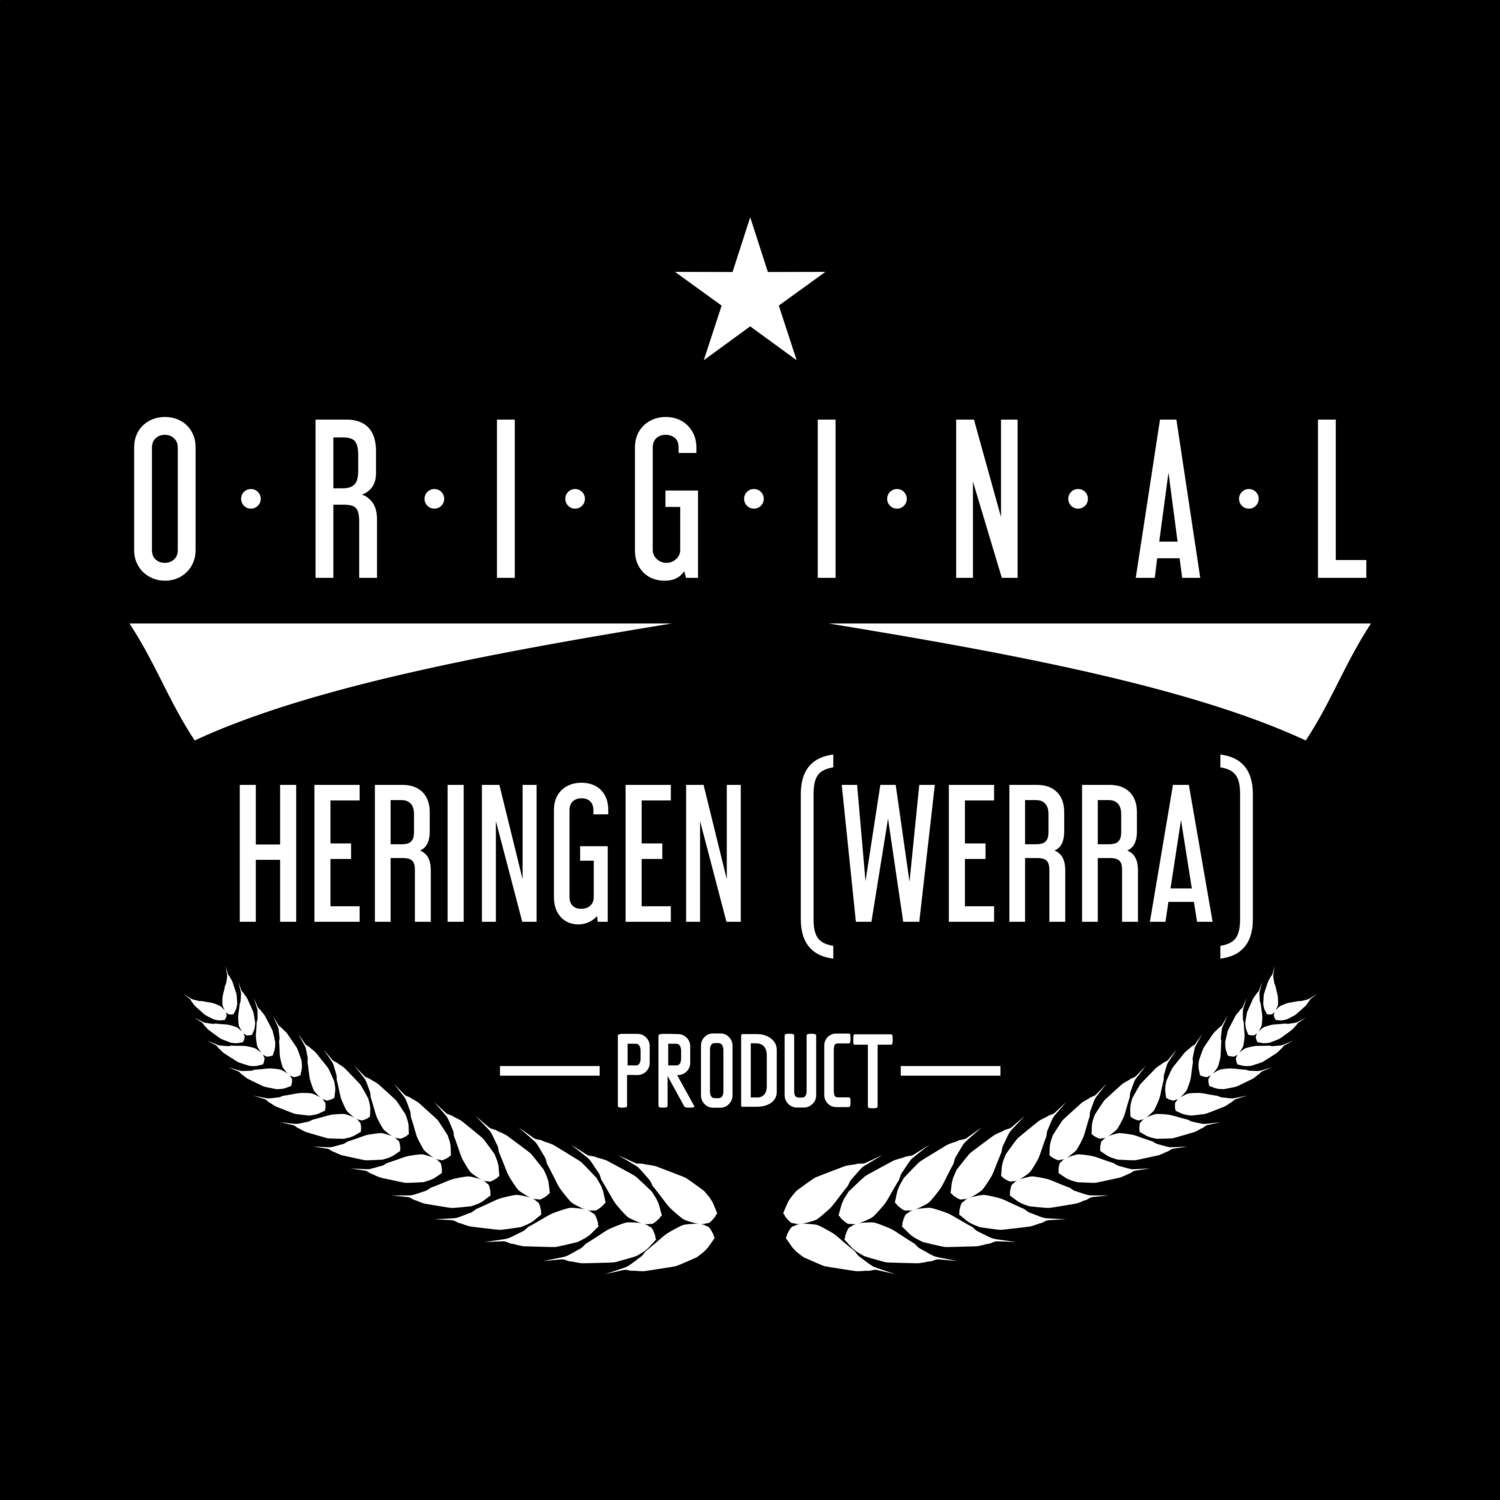 Heringen (Werra) T-Shirt »Original Product«